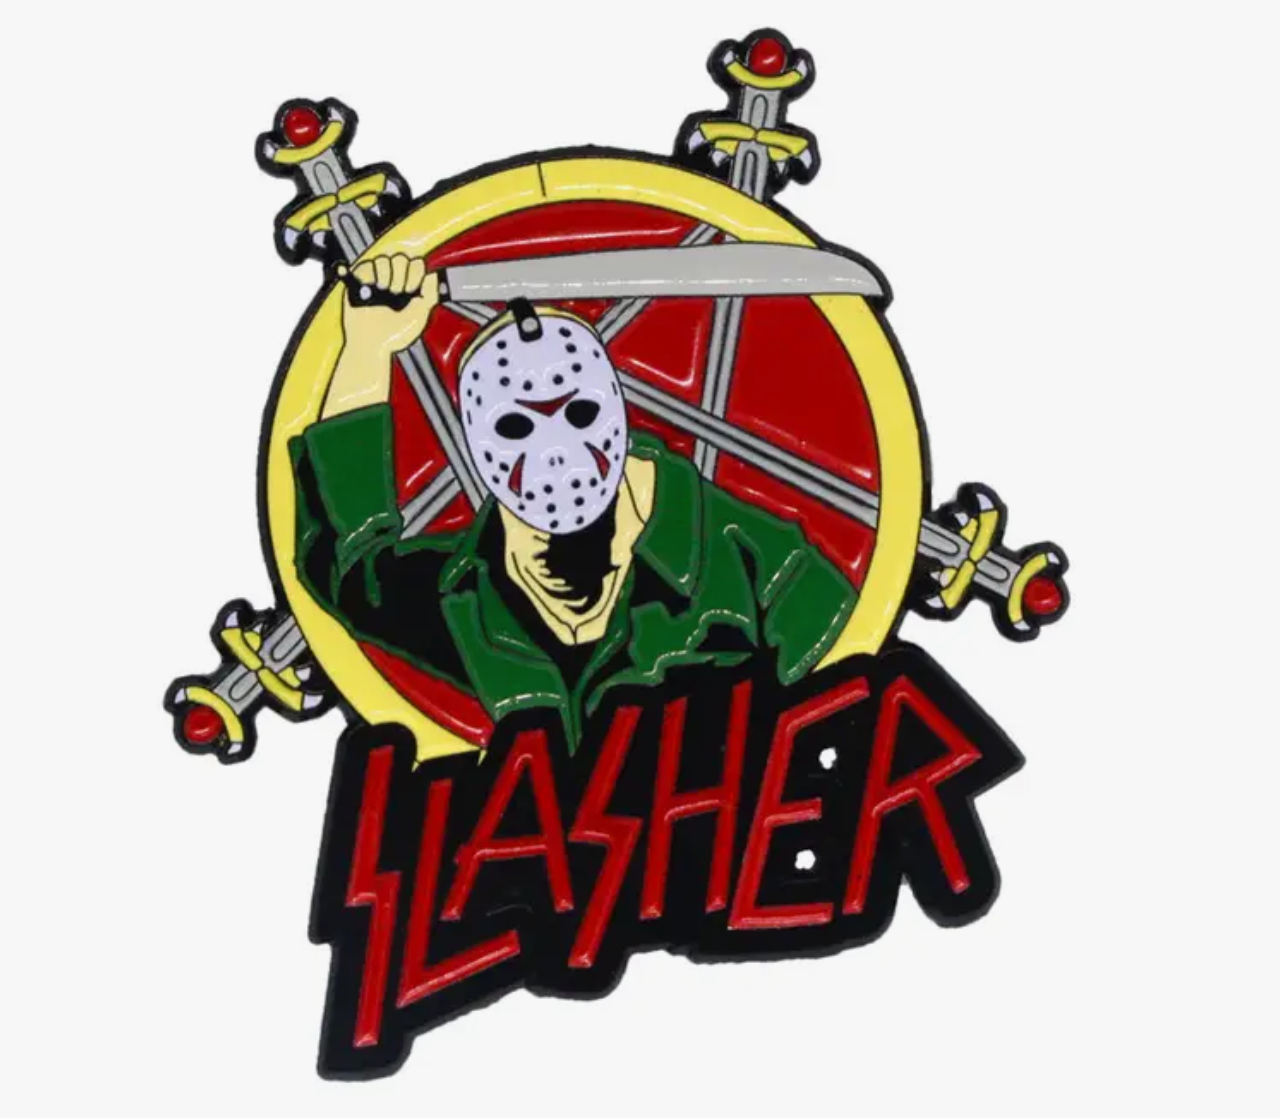 Slasher Jason Pin